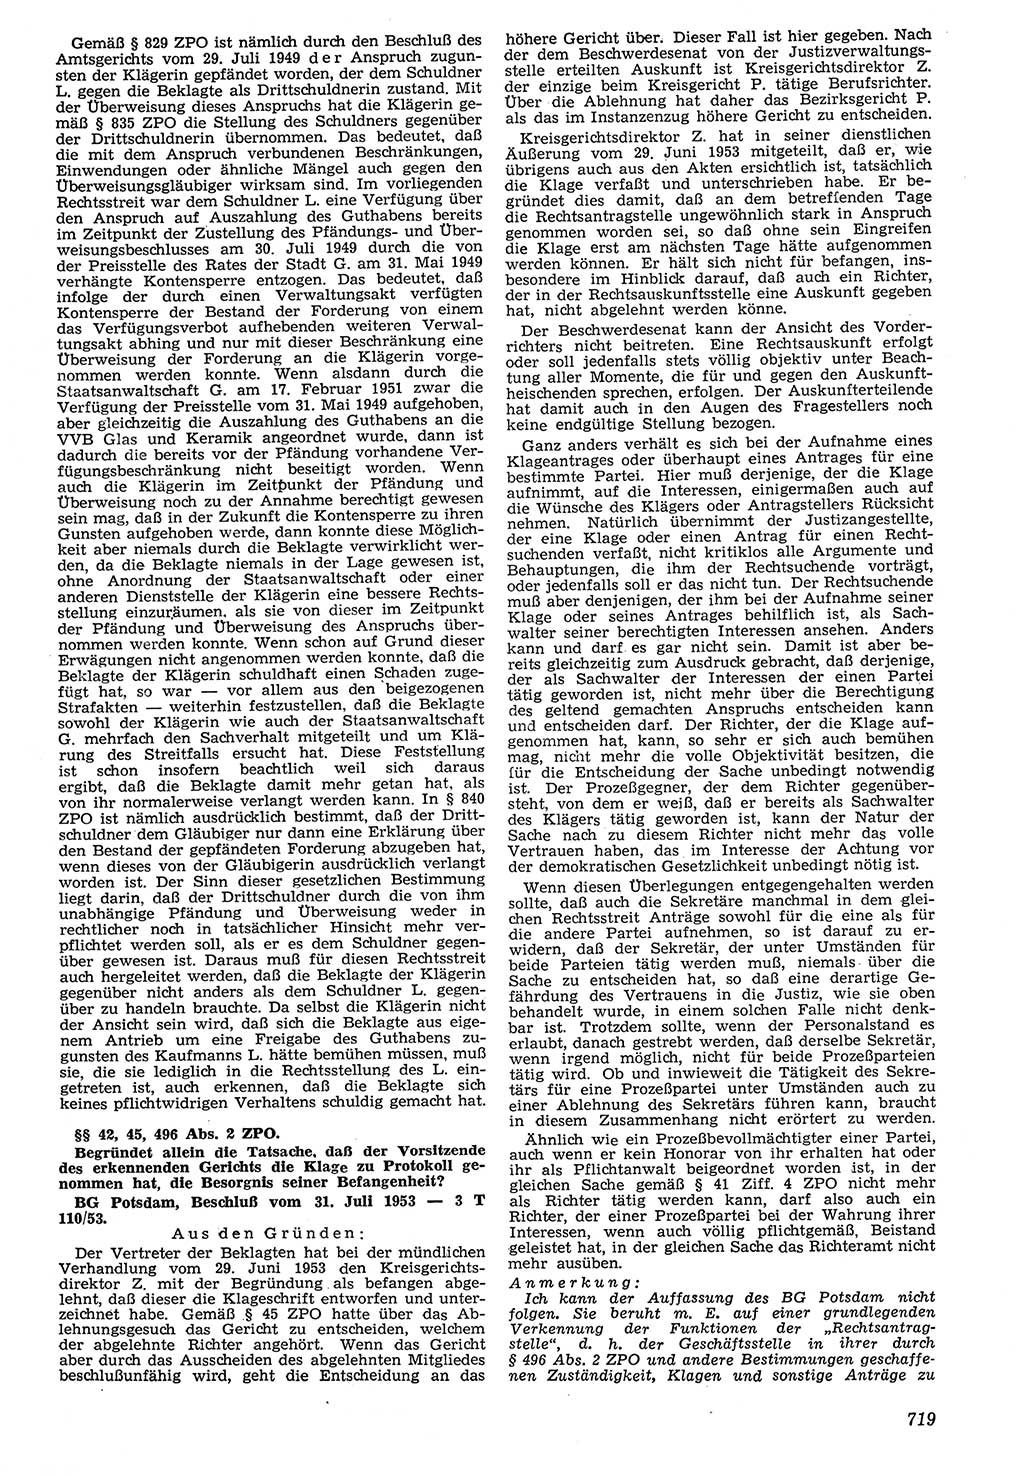 Neue Justiz (NJ), Zeitschrift für Recht und Rechtswissenschaft [Deutsche Demokratische Republik (DDR)], 7. Jahrgang 1953, Seite 719 (NJ DDR 1953, S. 719)